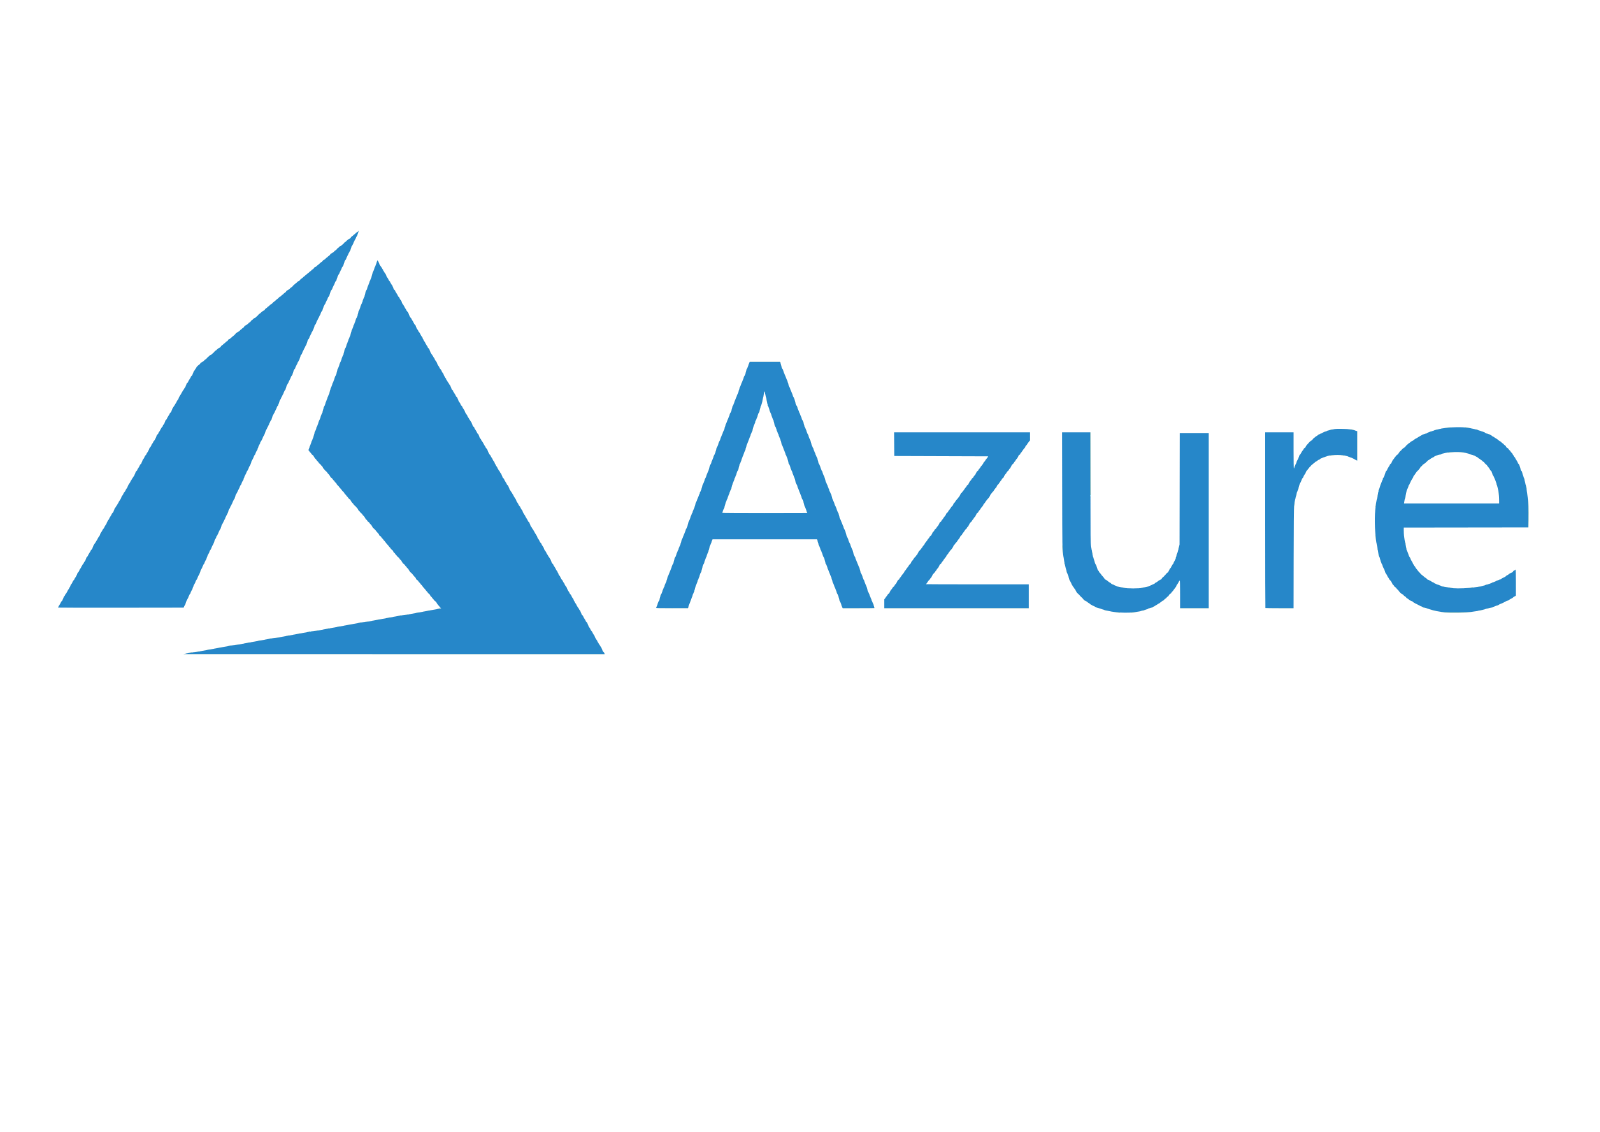 microsoft azure marketplace logo